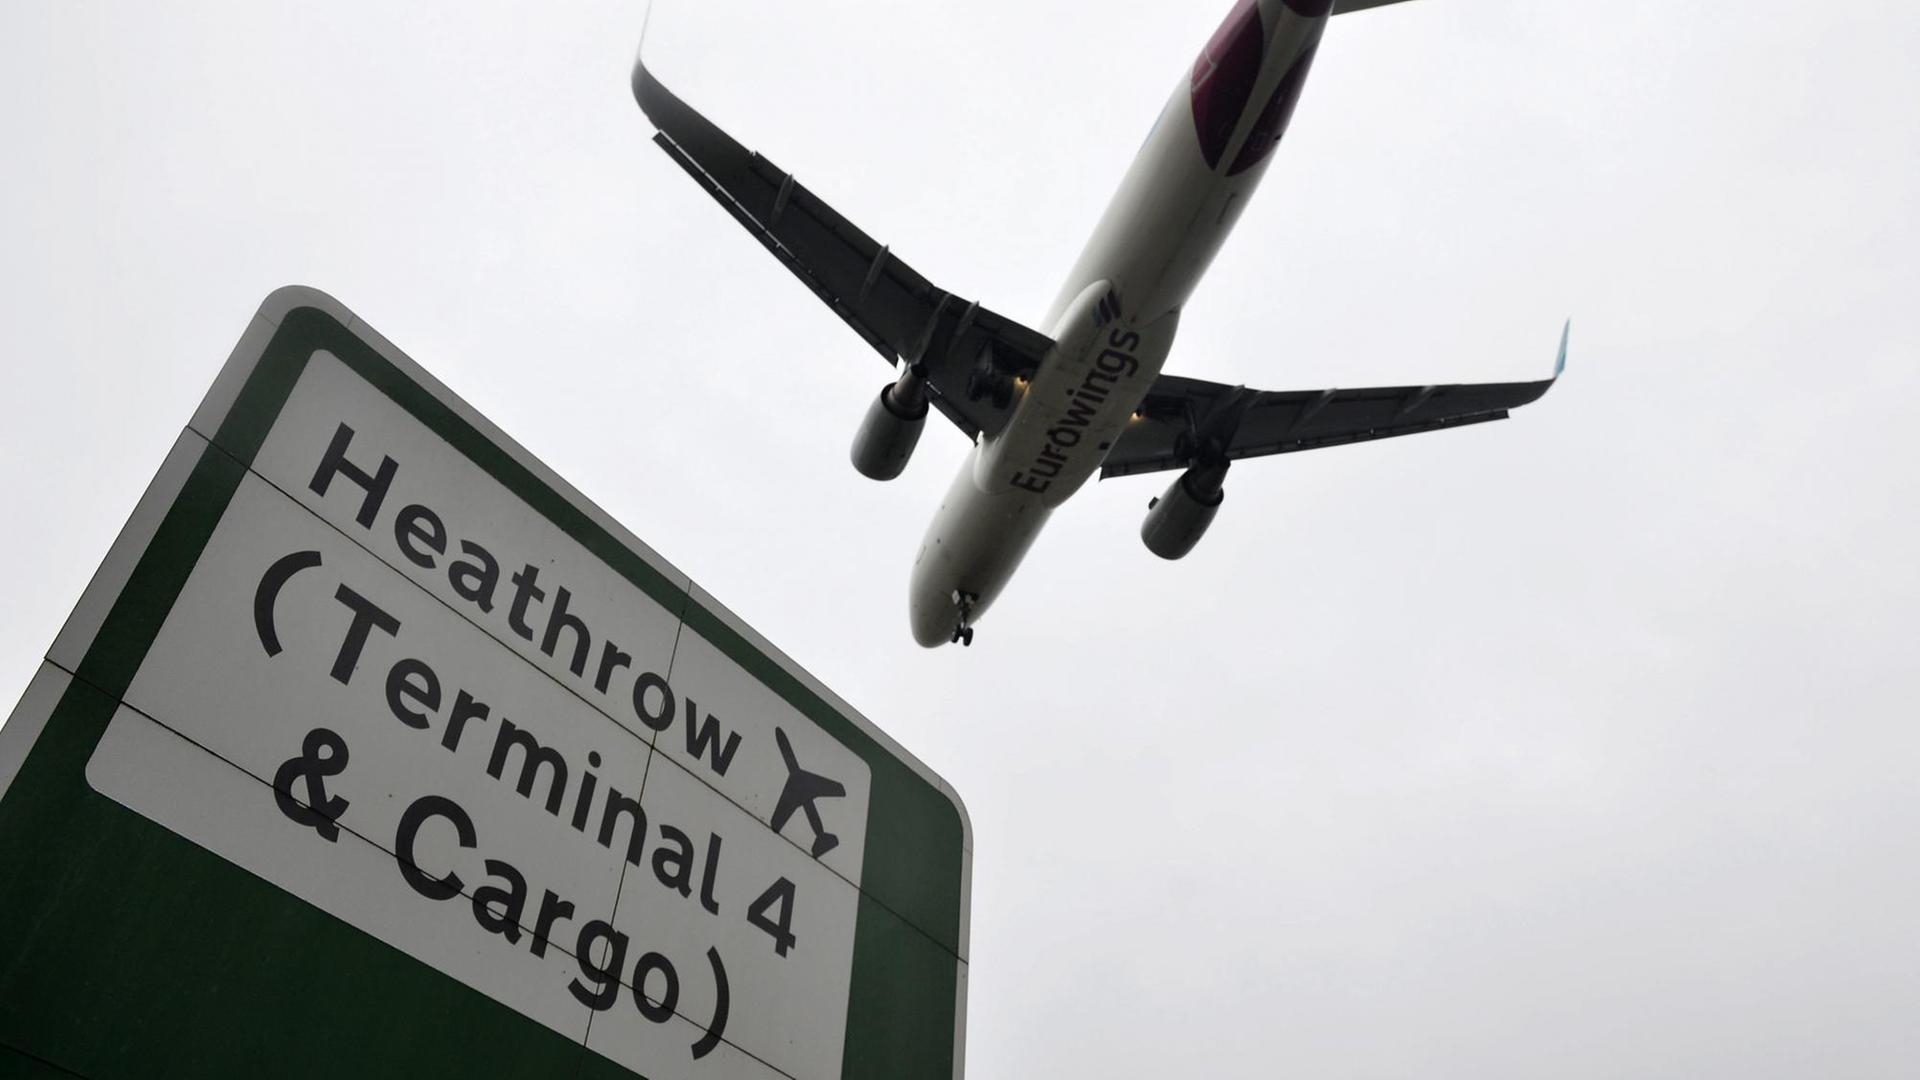 Blick auf ein Flugzeug von unten und einem Schild mit der Aufschrift "Heathrow (Terminal 4 & Cargo)